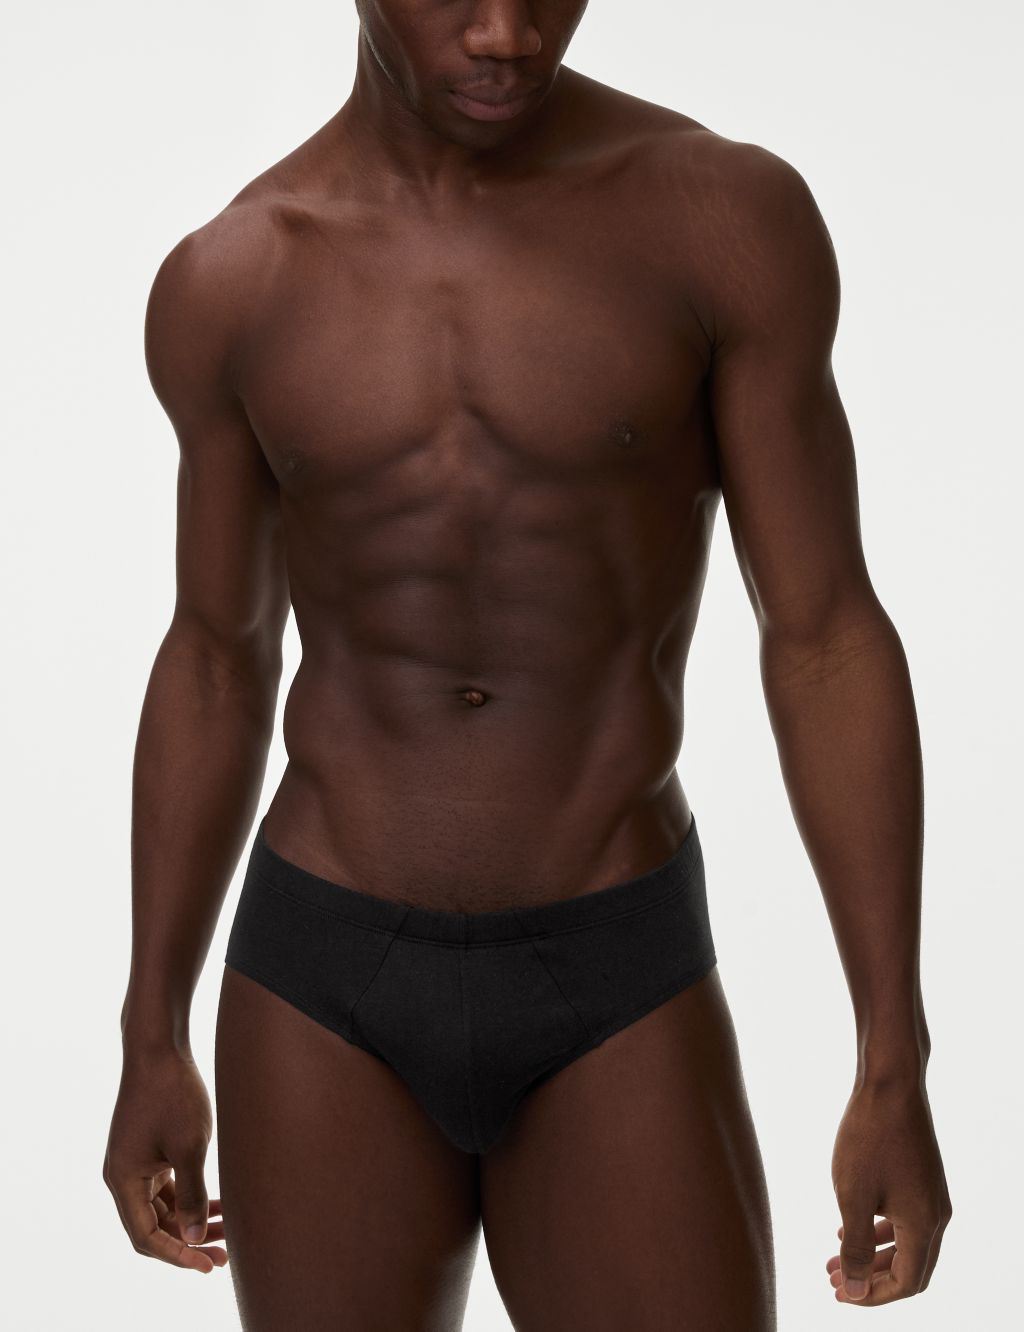 MENS 100% COTTON Black F&F Tesco Underwear Briefs Slips Pants Size L Large  36 £1.49 - PicClick UK